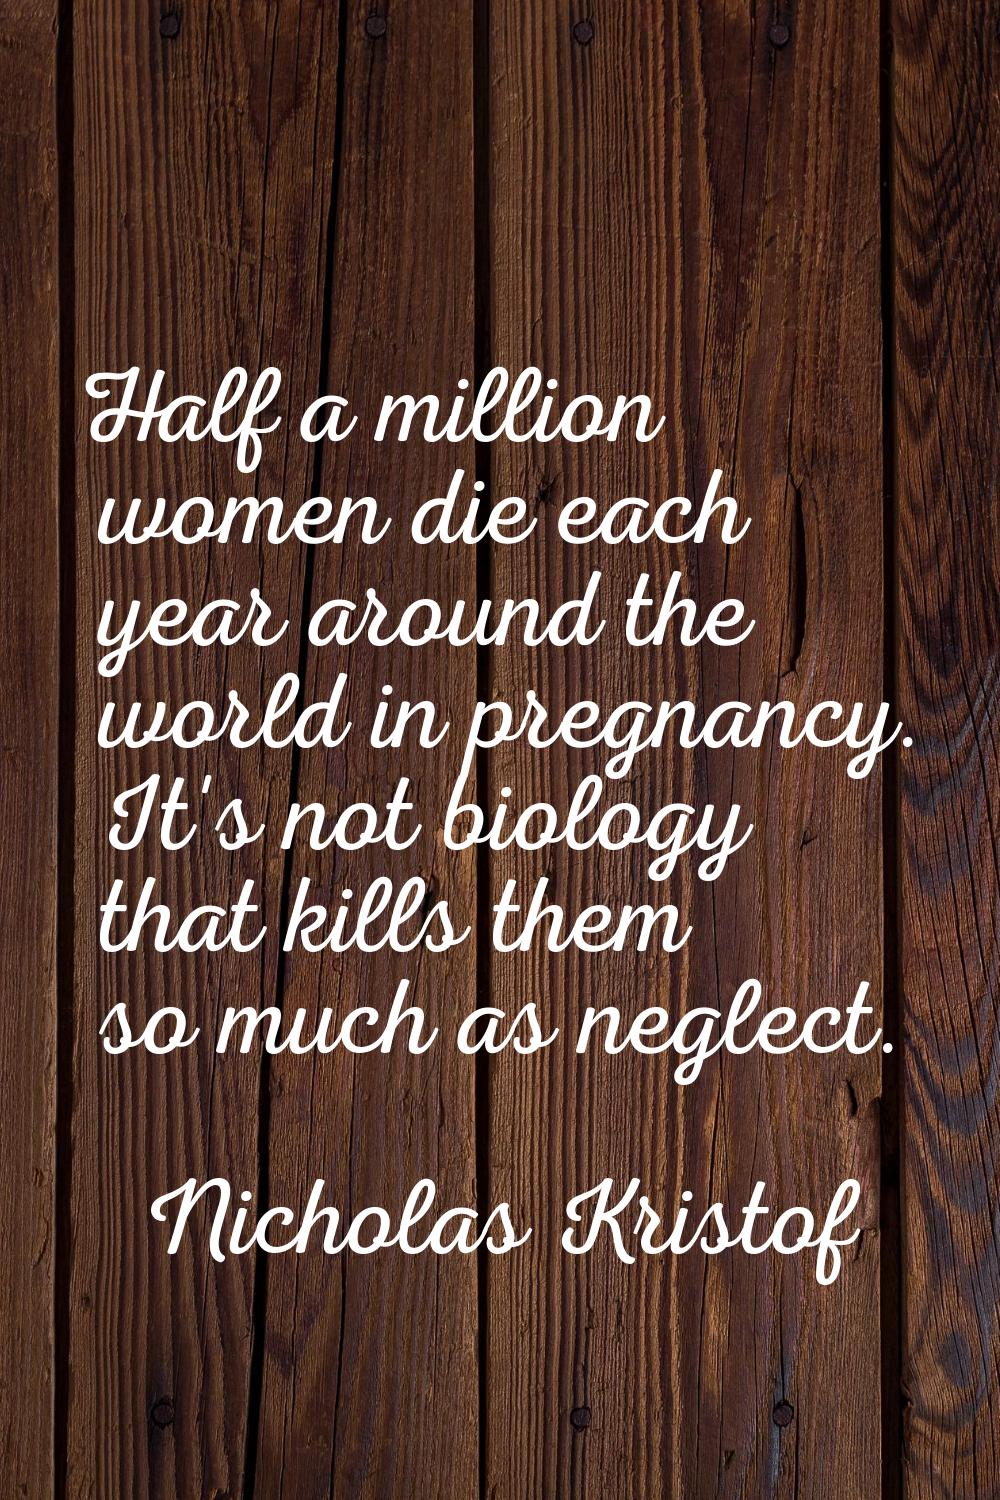 Half a million women die each year around the world in pregnancy. It's not biology that kills them 